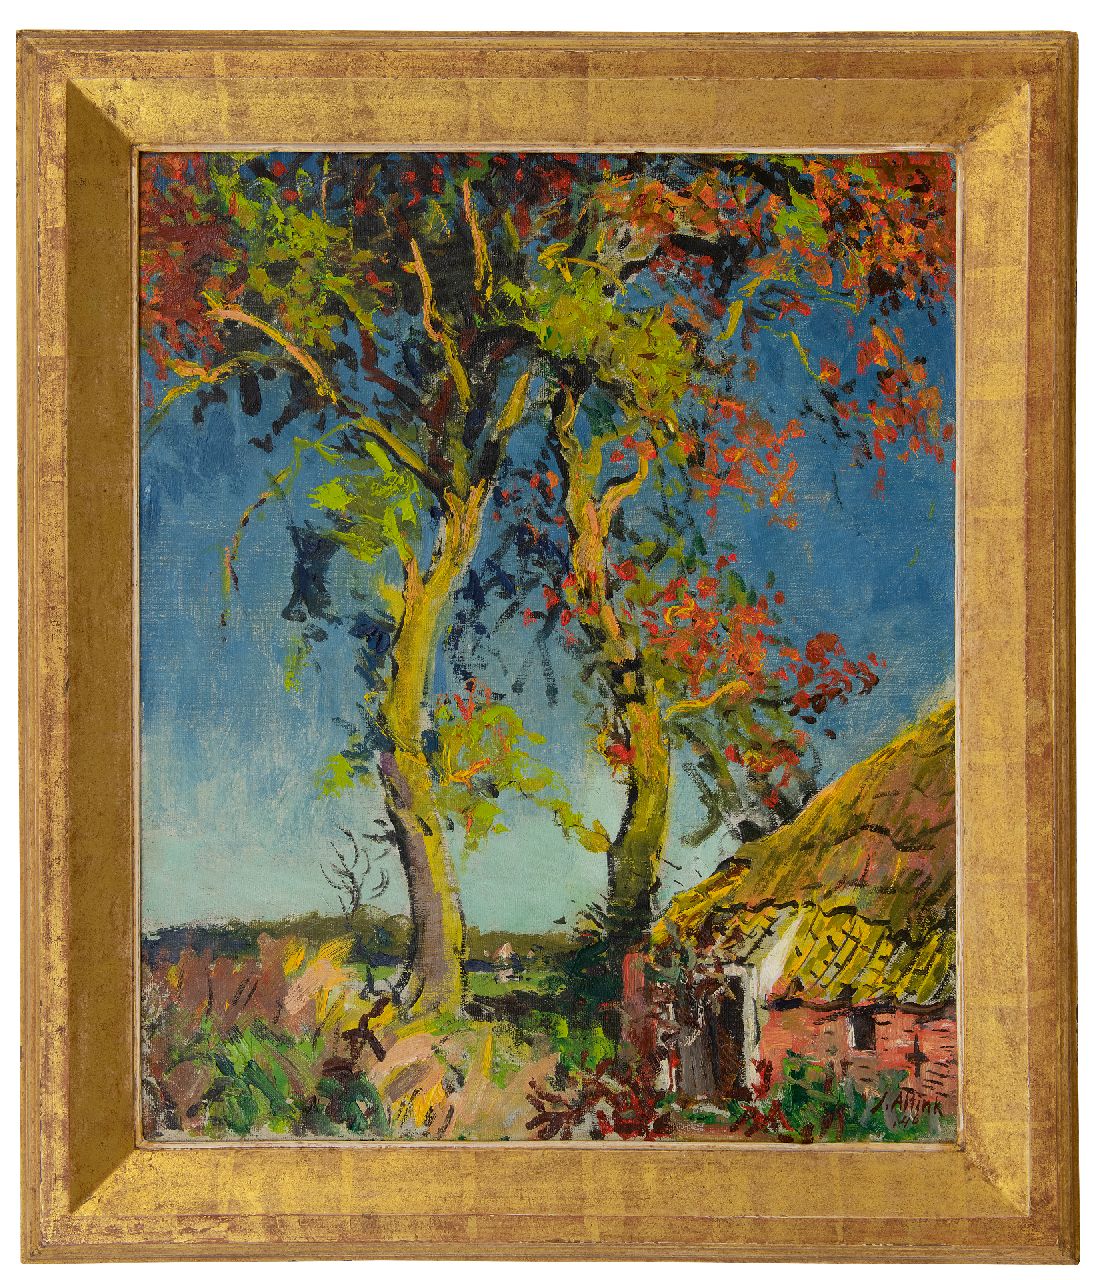 Altink J.  | Jan Altink | Schilderijen te koop aangeboden | Boerderij bij hoge bomen, olieverf op doek 60,6 x 50,2 cm, gesigneerd rechtsonder en gedateerd '46